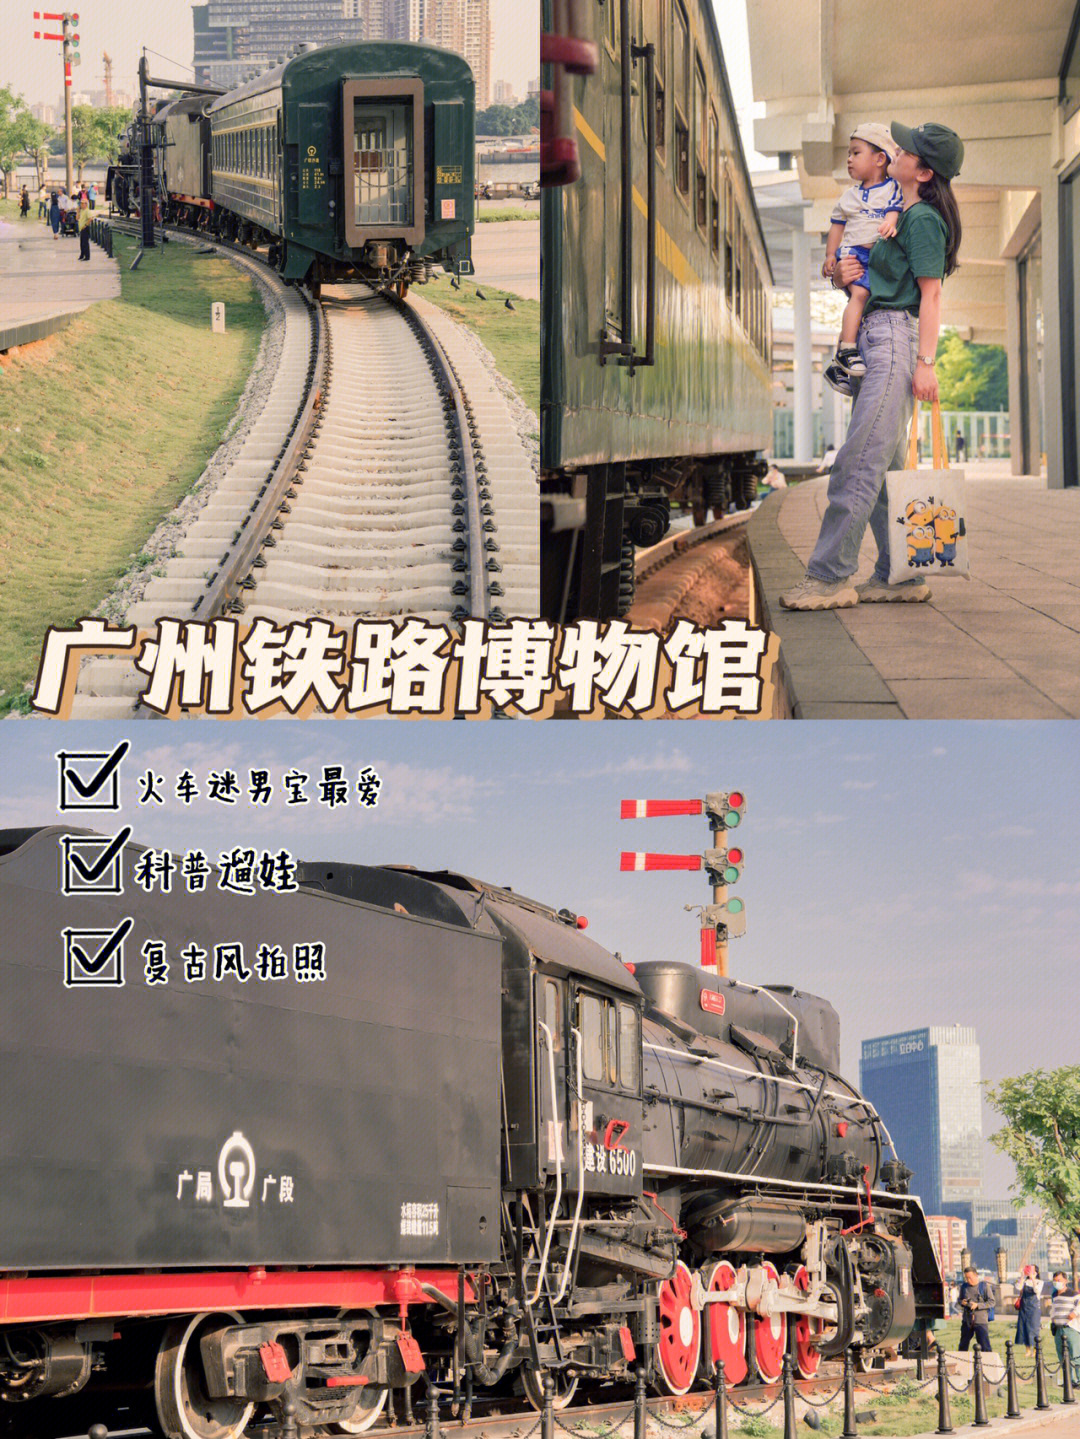 广州遛娃拍照火车迷男孩最爱的铁路博物馆